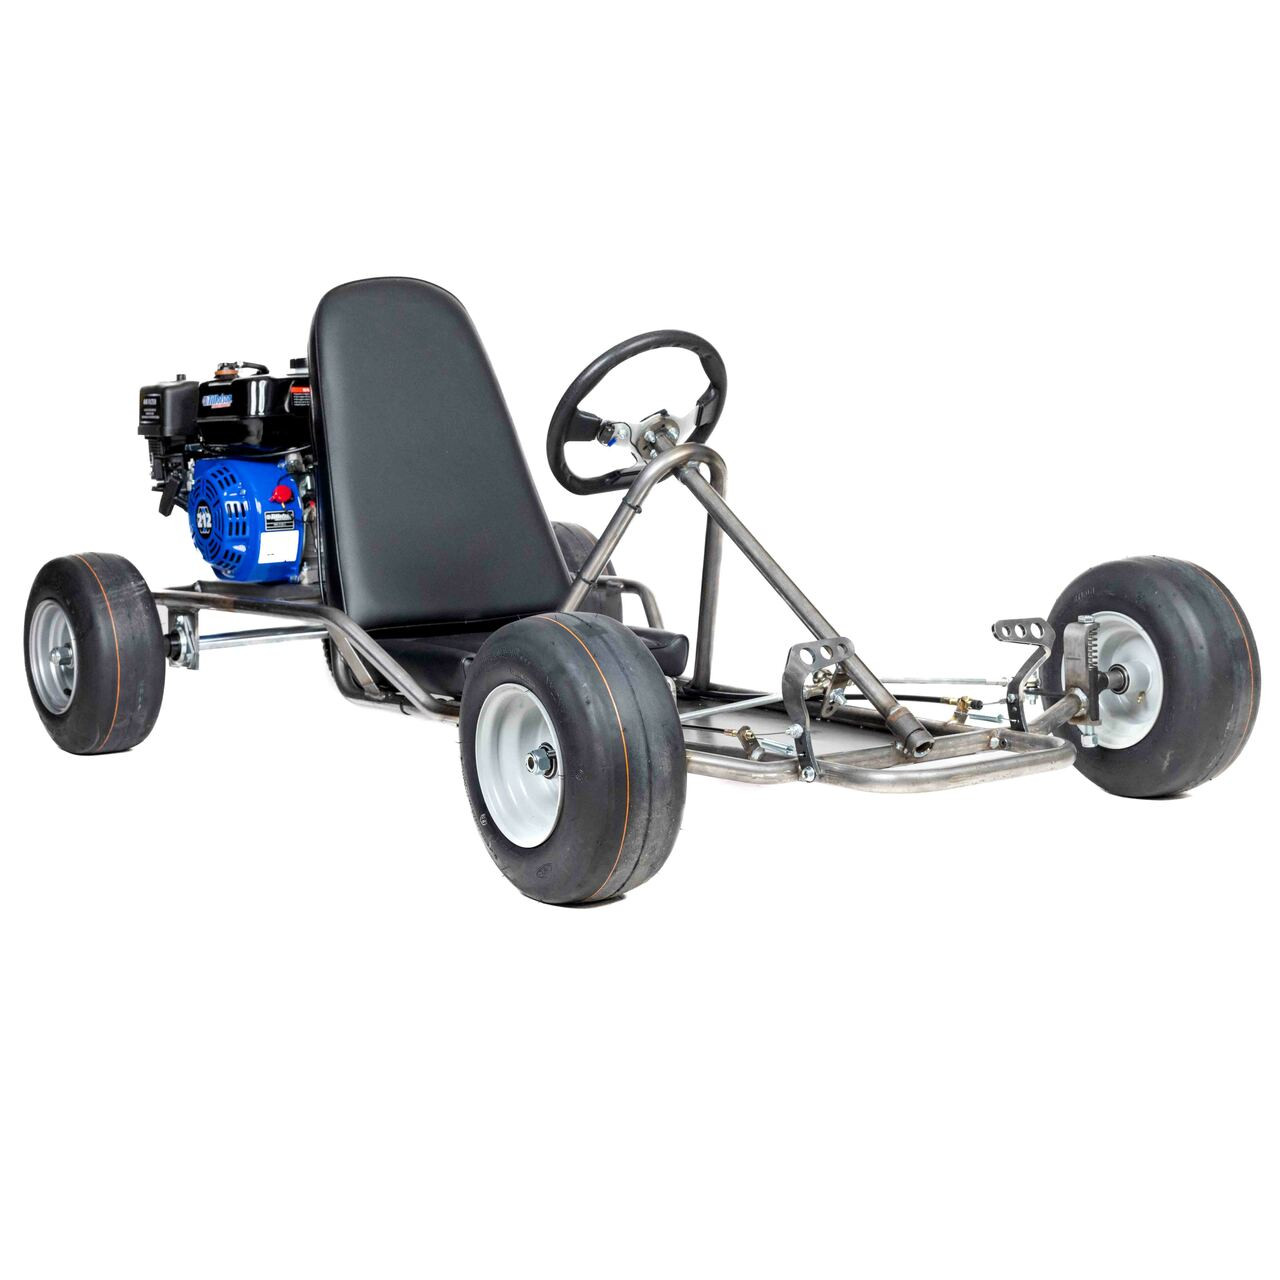 Vintage Go Kart Roller Kit with 13" Slick Tires and Tillotson 212E Engine (Engine Sold Separately)